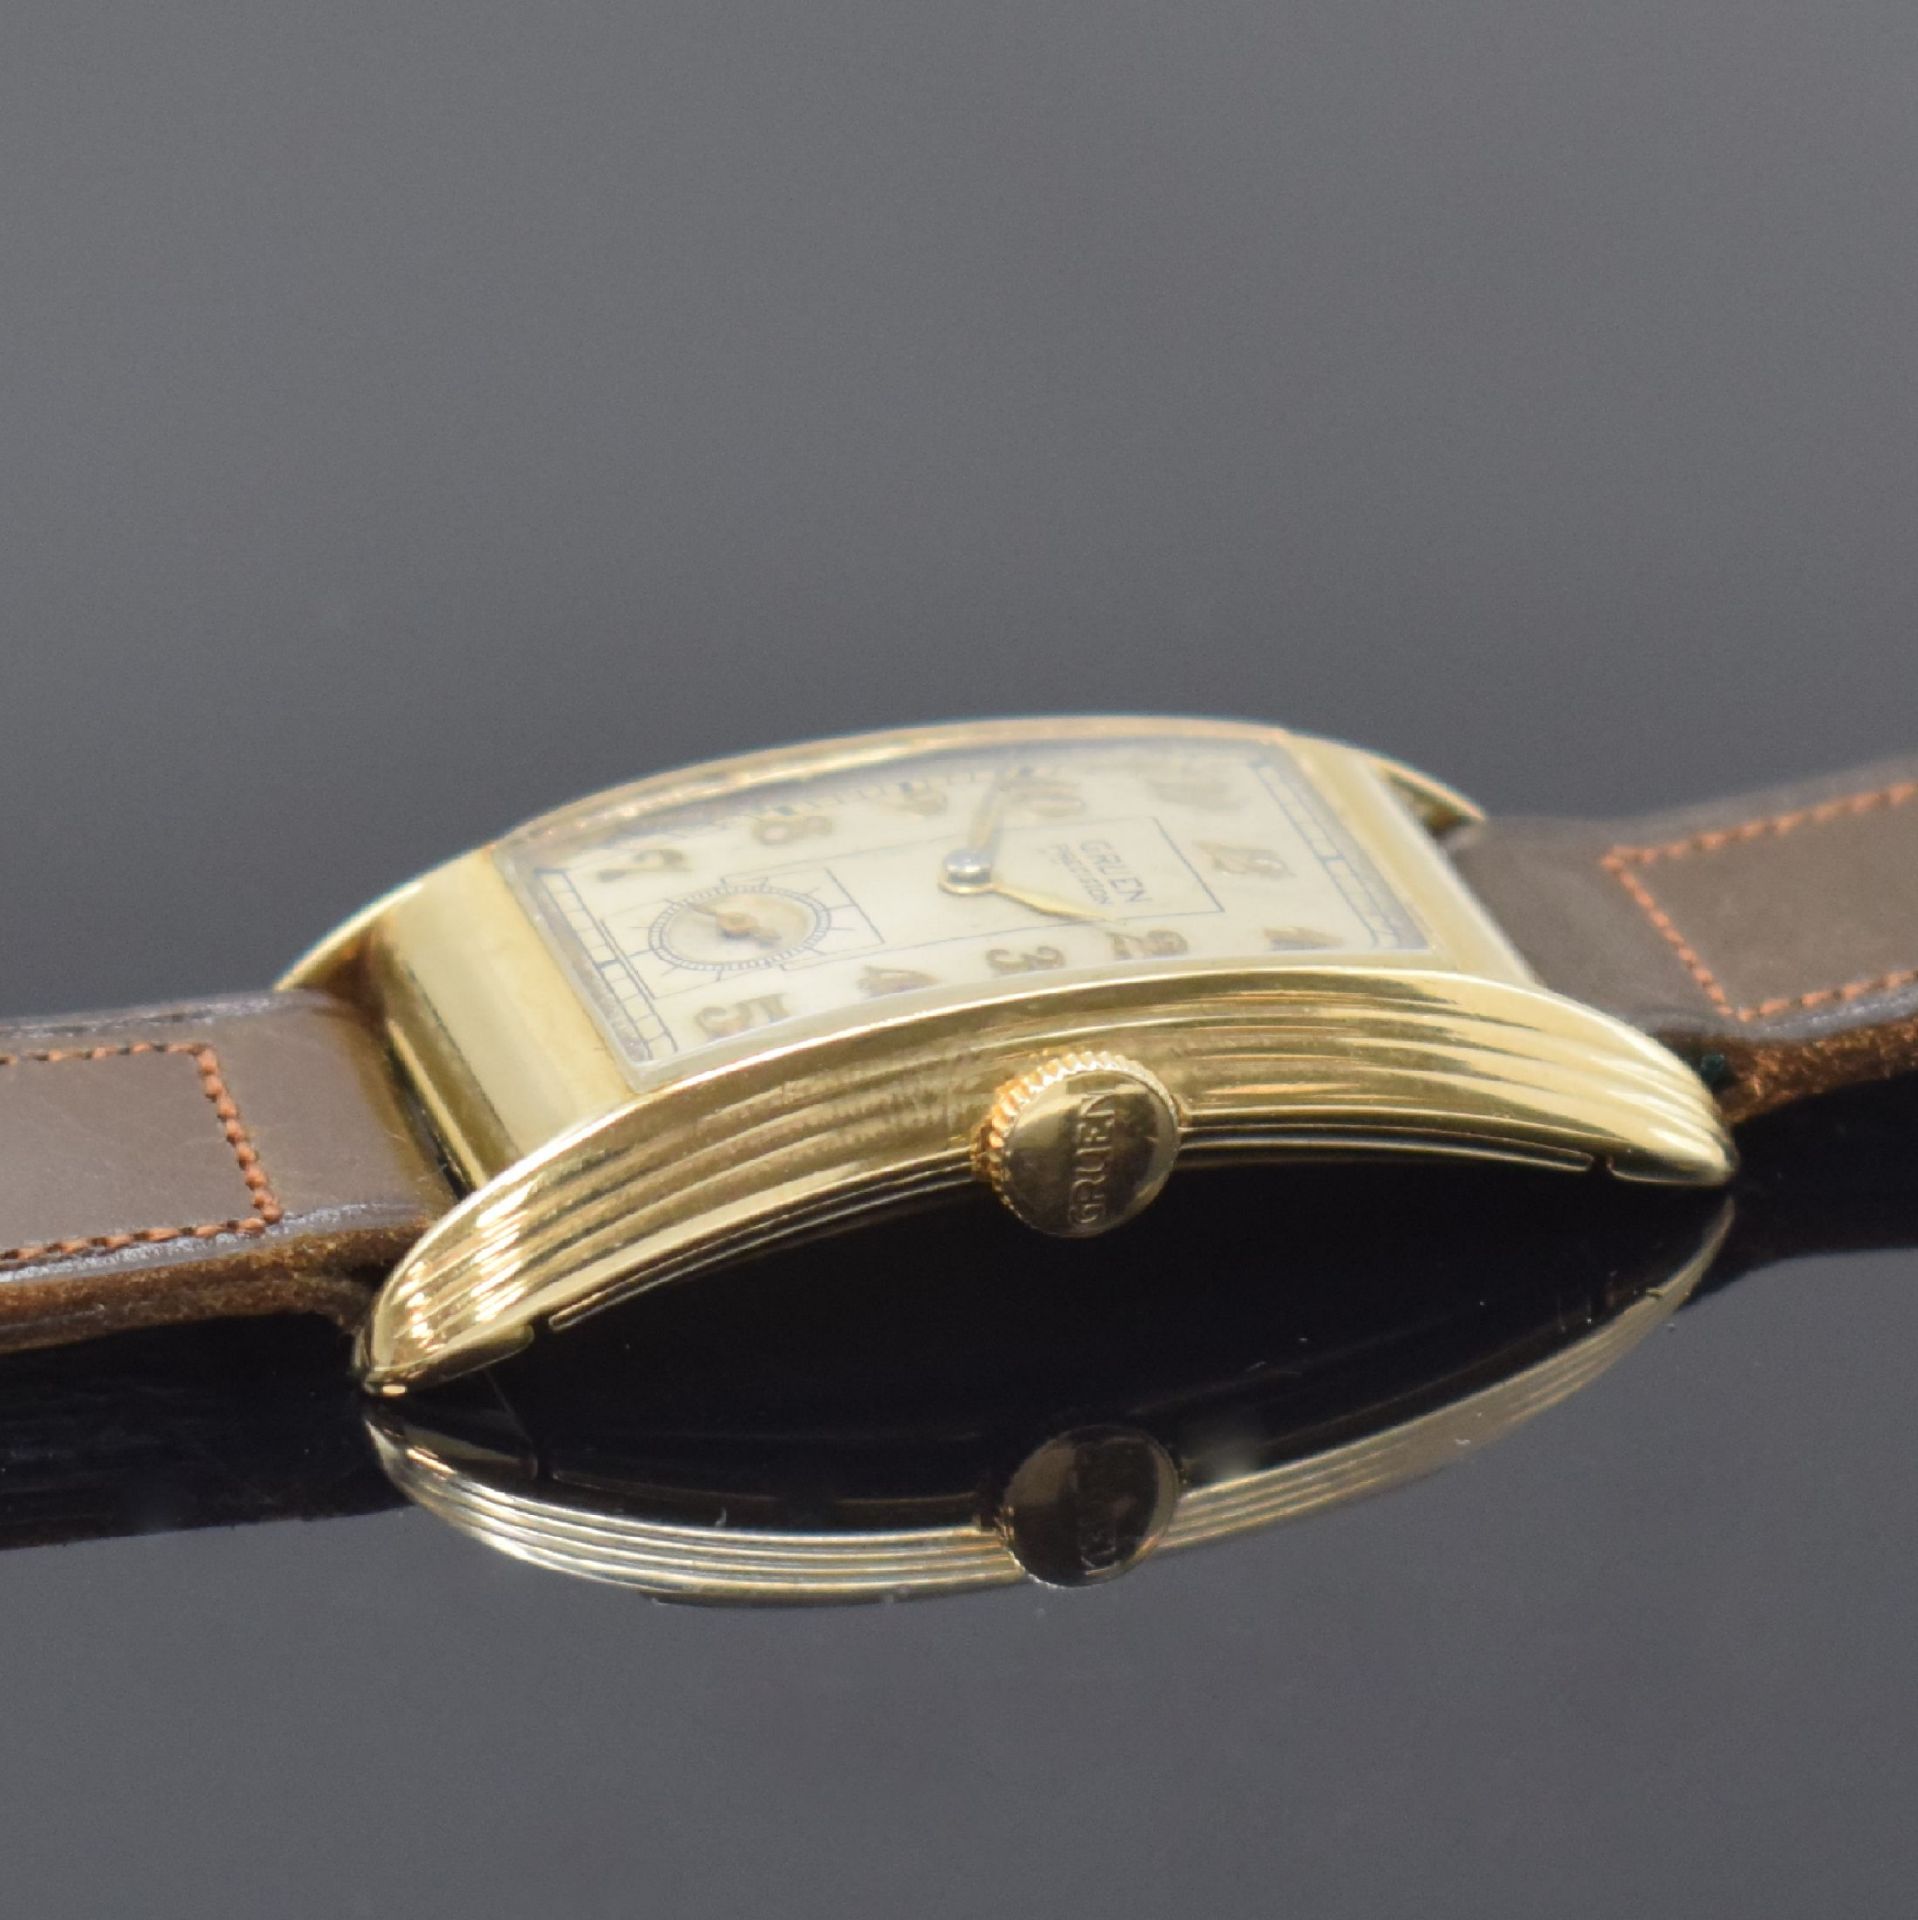 GRUEN Precision rechteckige Armbanduhr in 14k Gelbgold, - Bild 3 aus 6